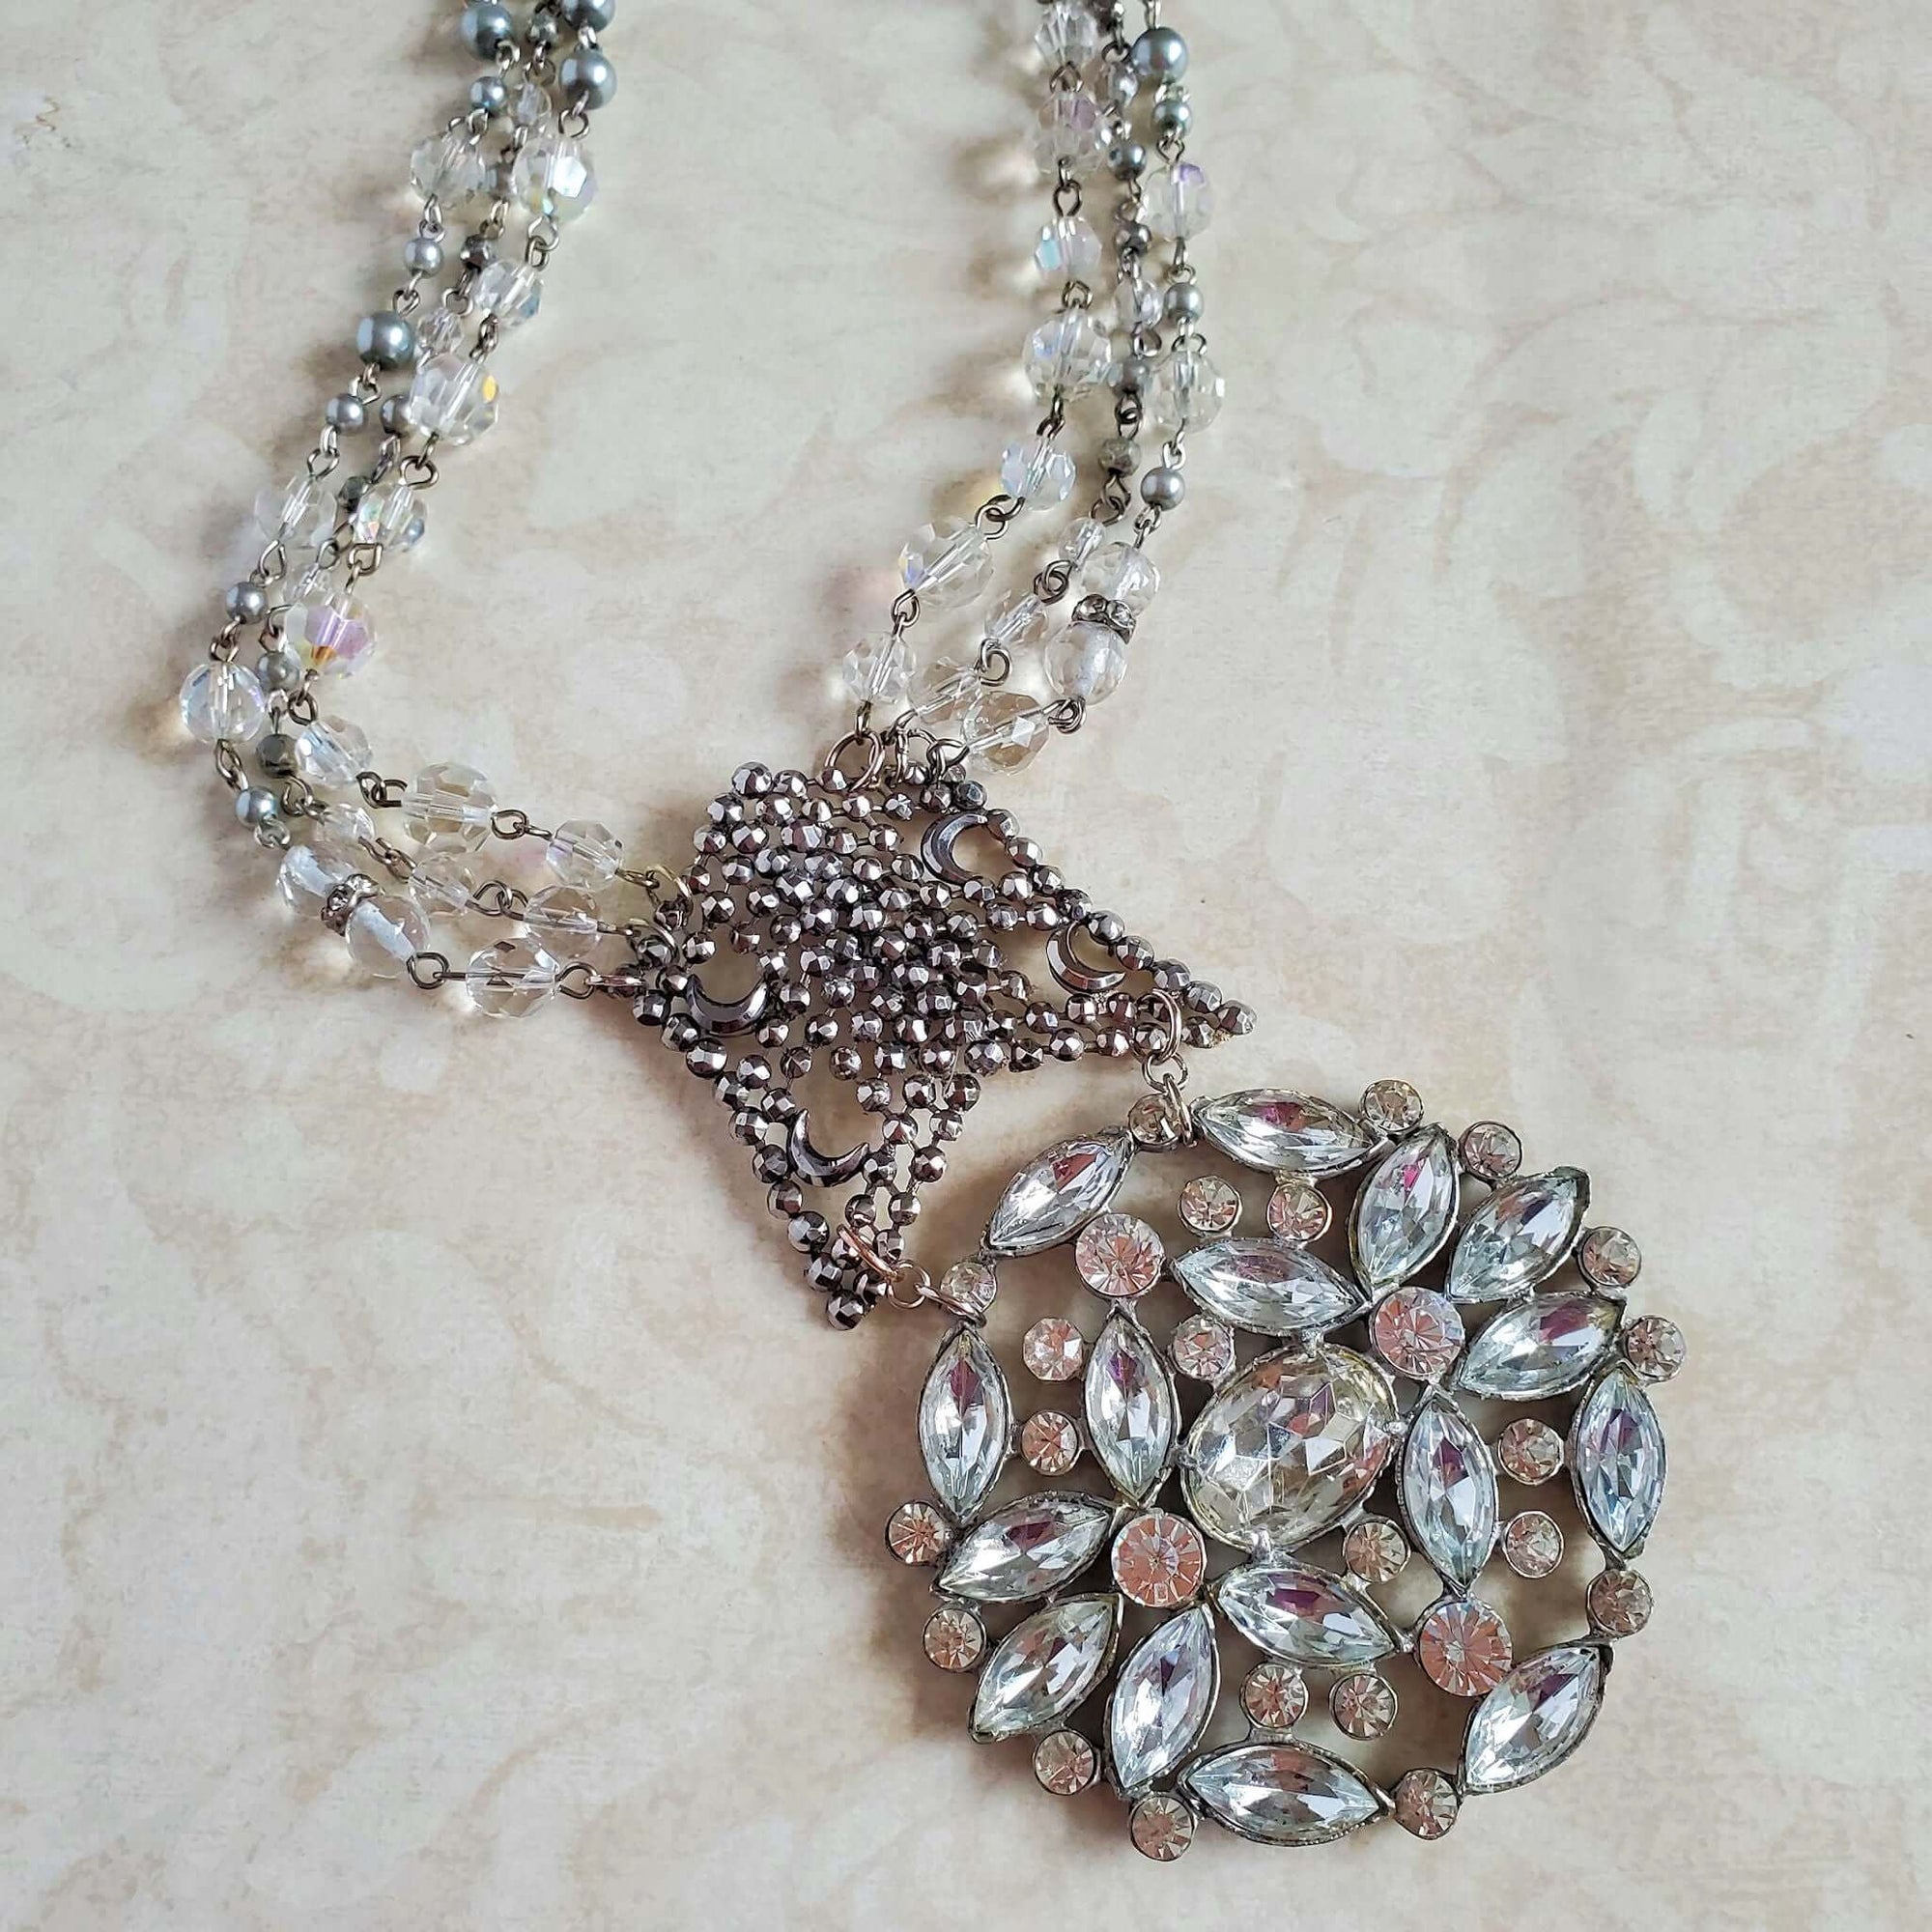 Repurposed Antique Necklace